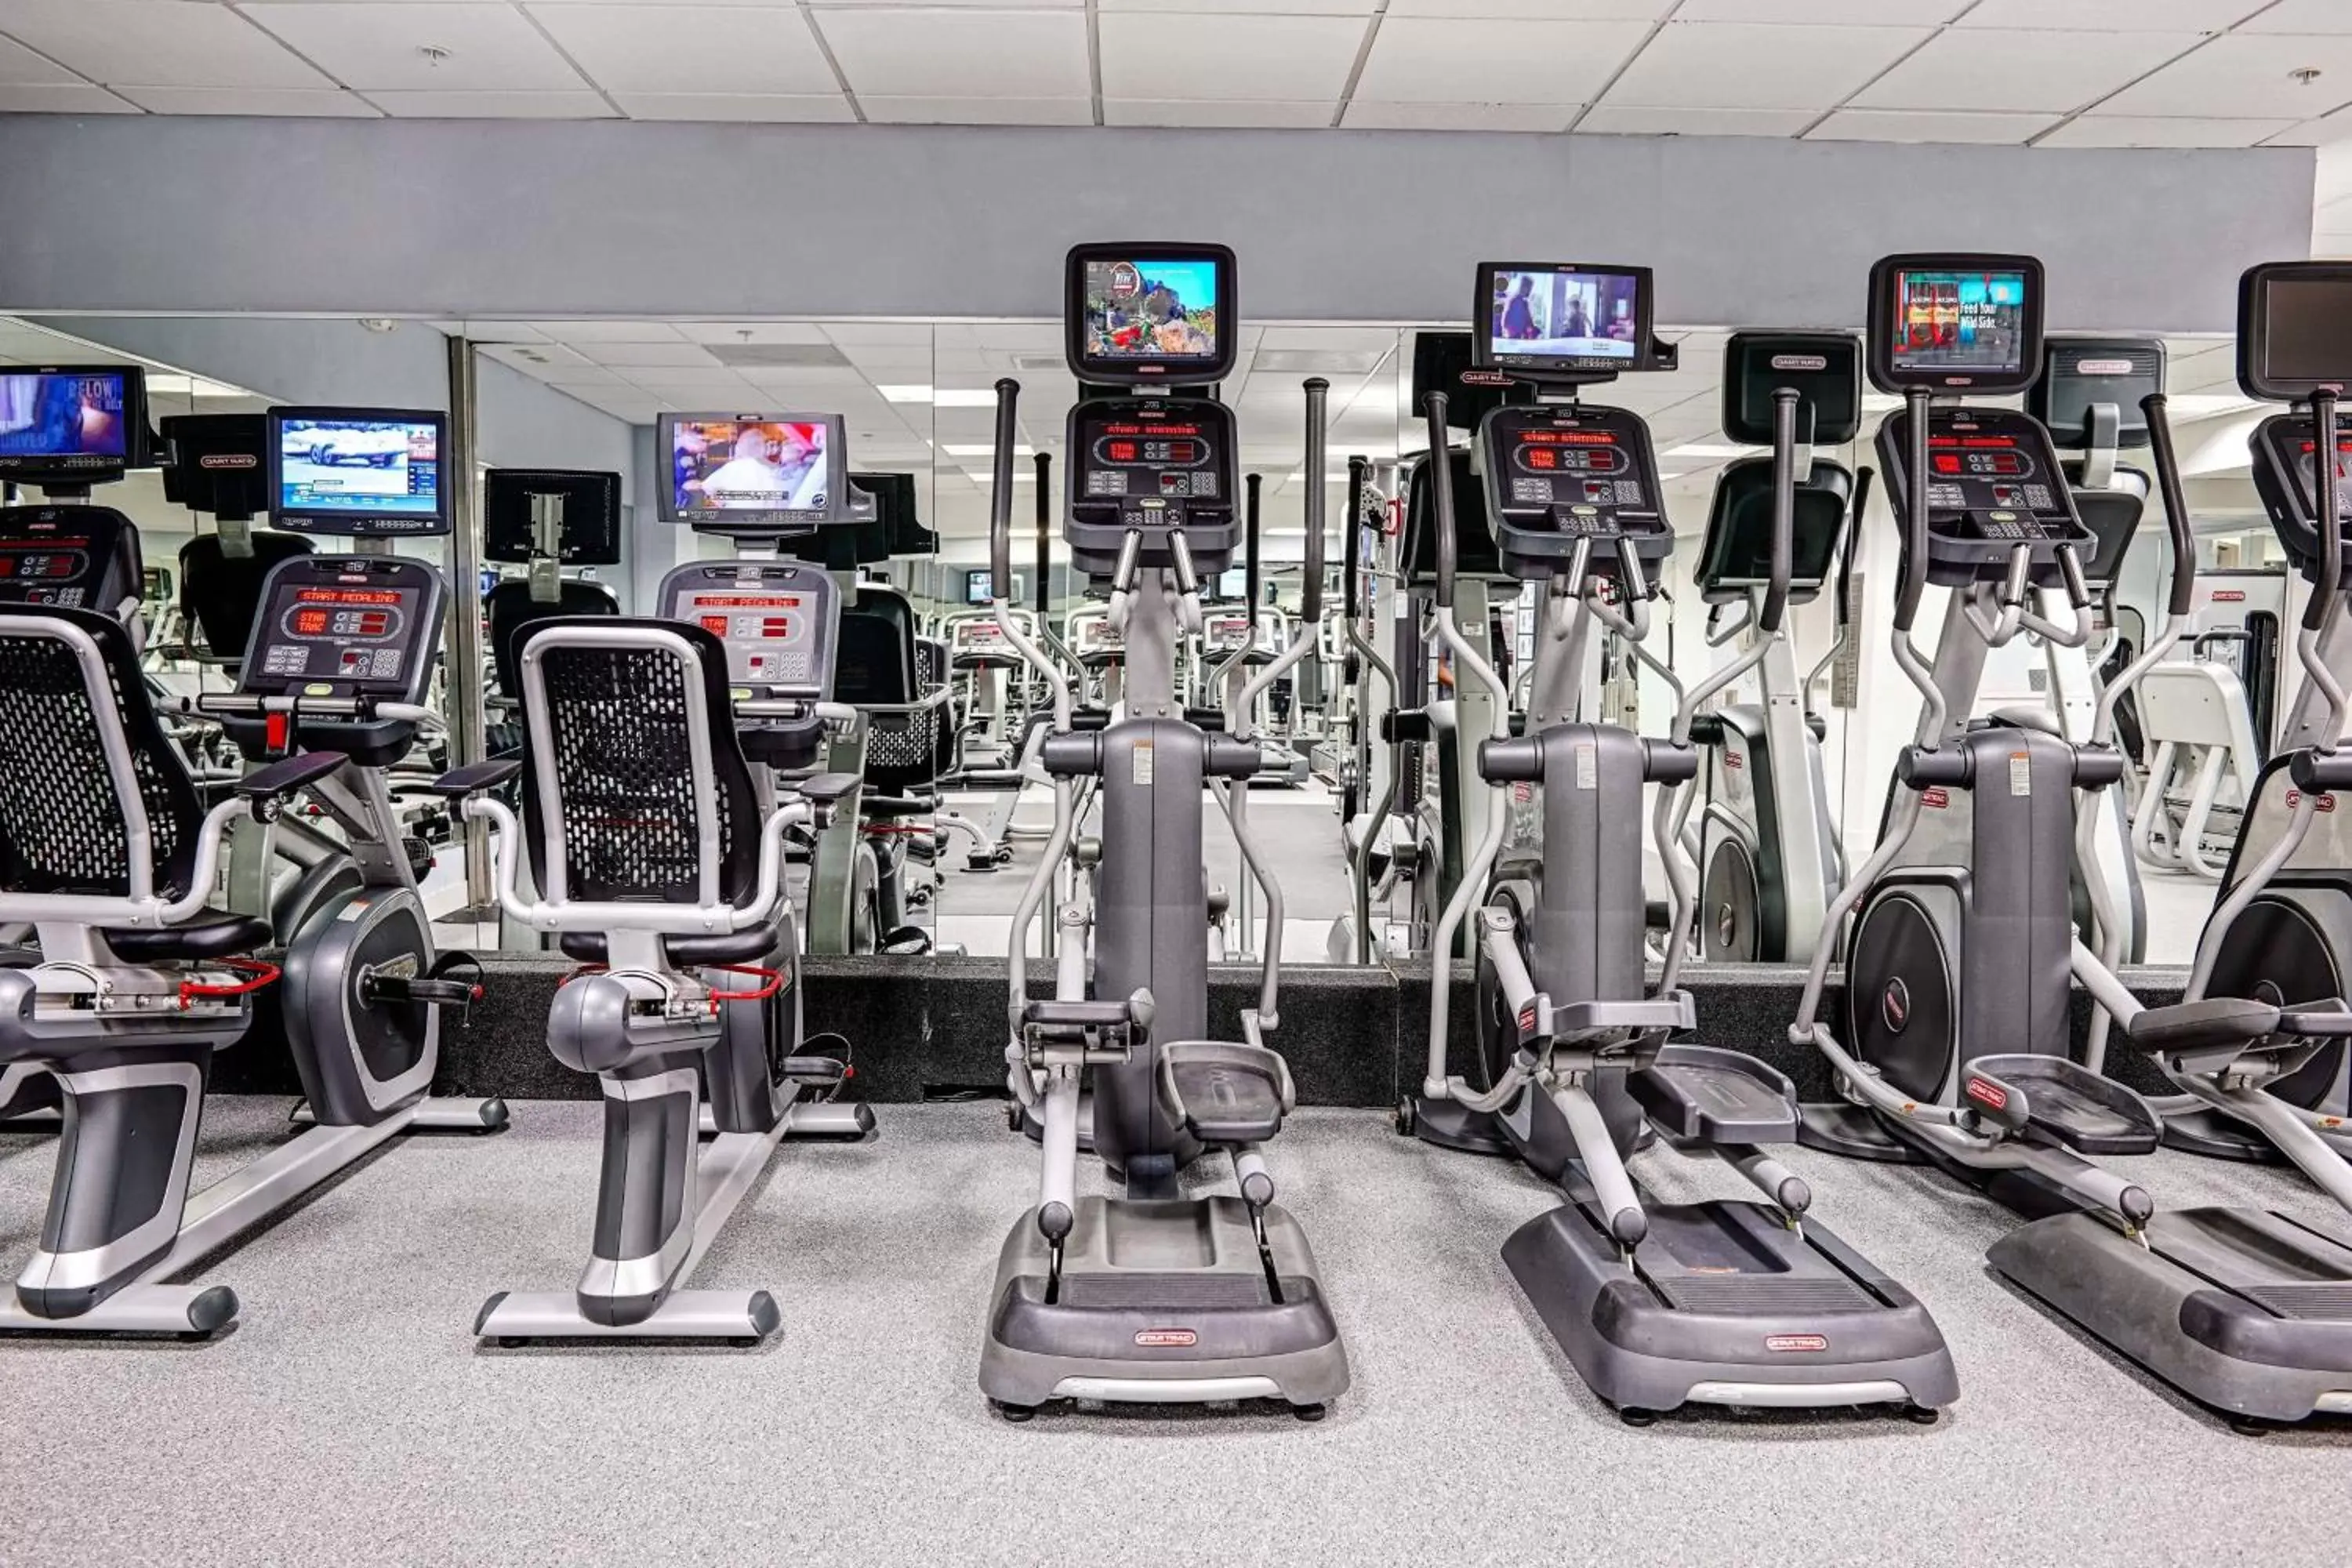 Fitness centre/facilities, Fitness Center/Facilities in San Juan Marriott Resort and Stellaris Casino